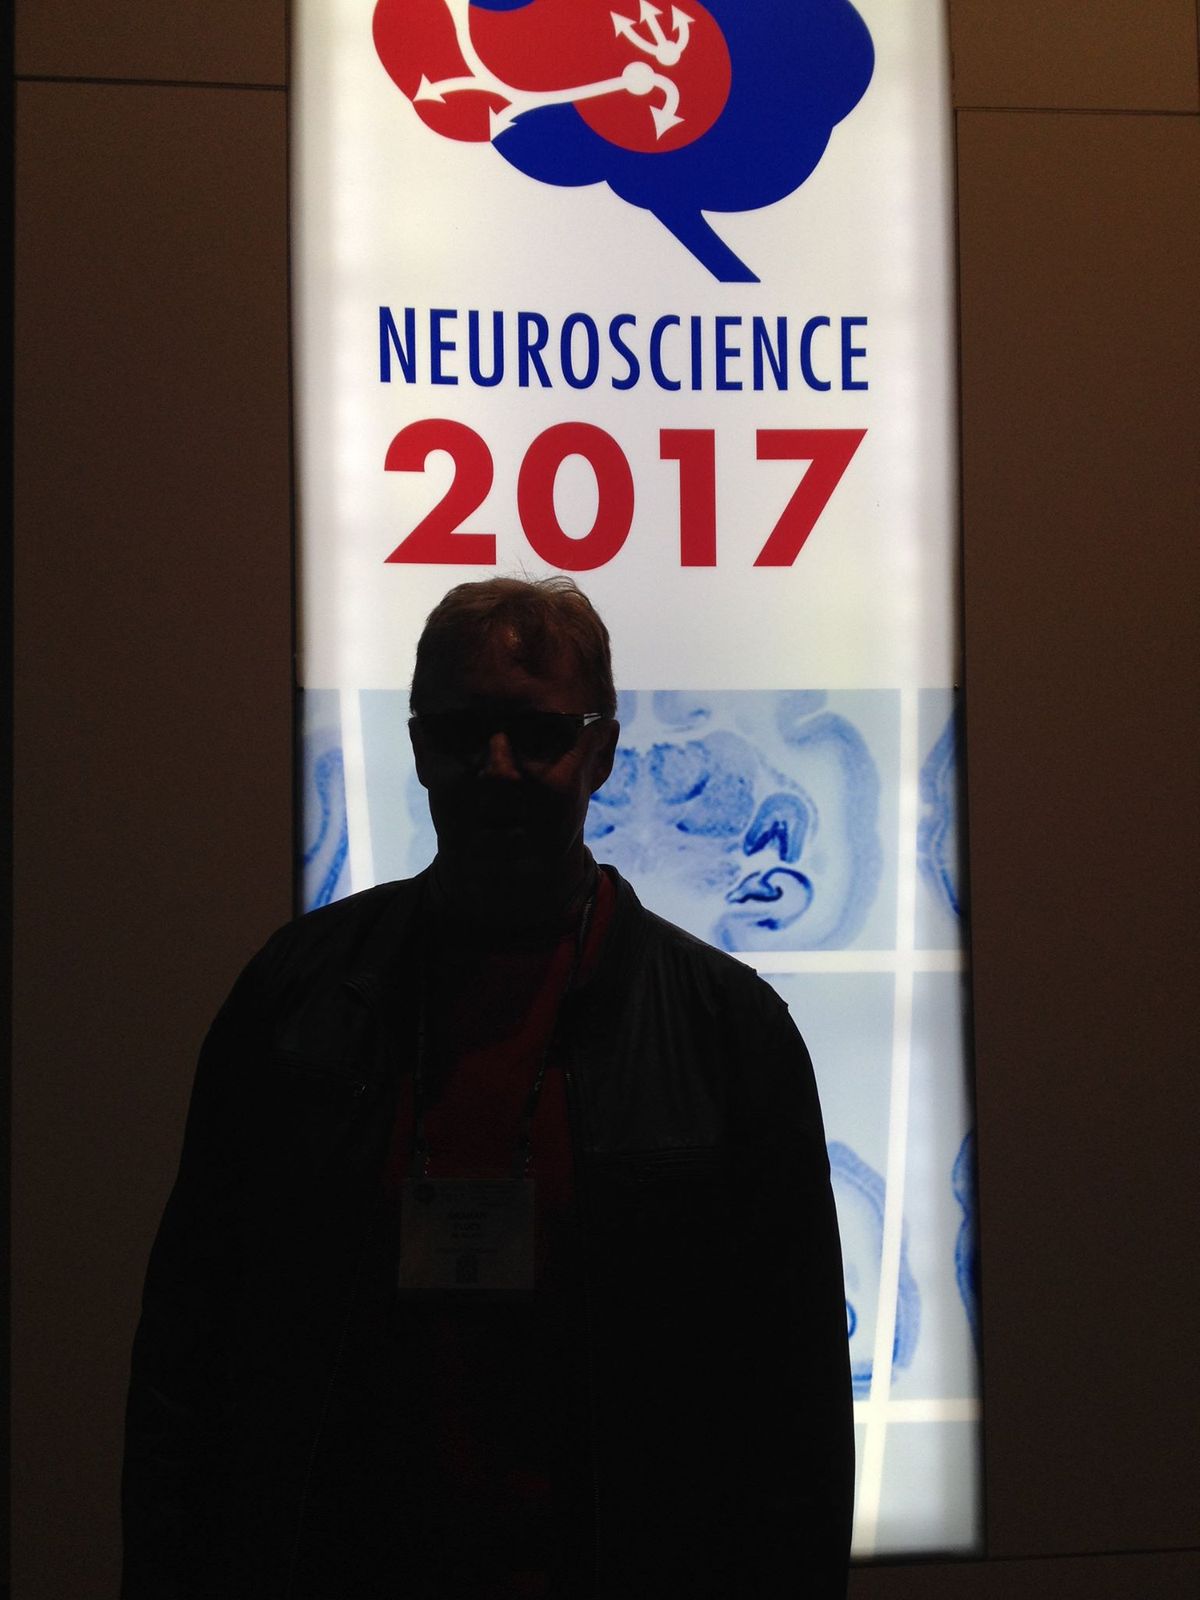 Society for Neuroscience Annual Congress, Washington, USA, 2017